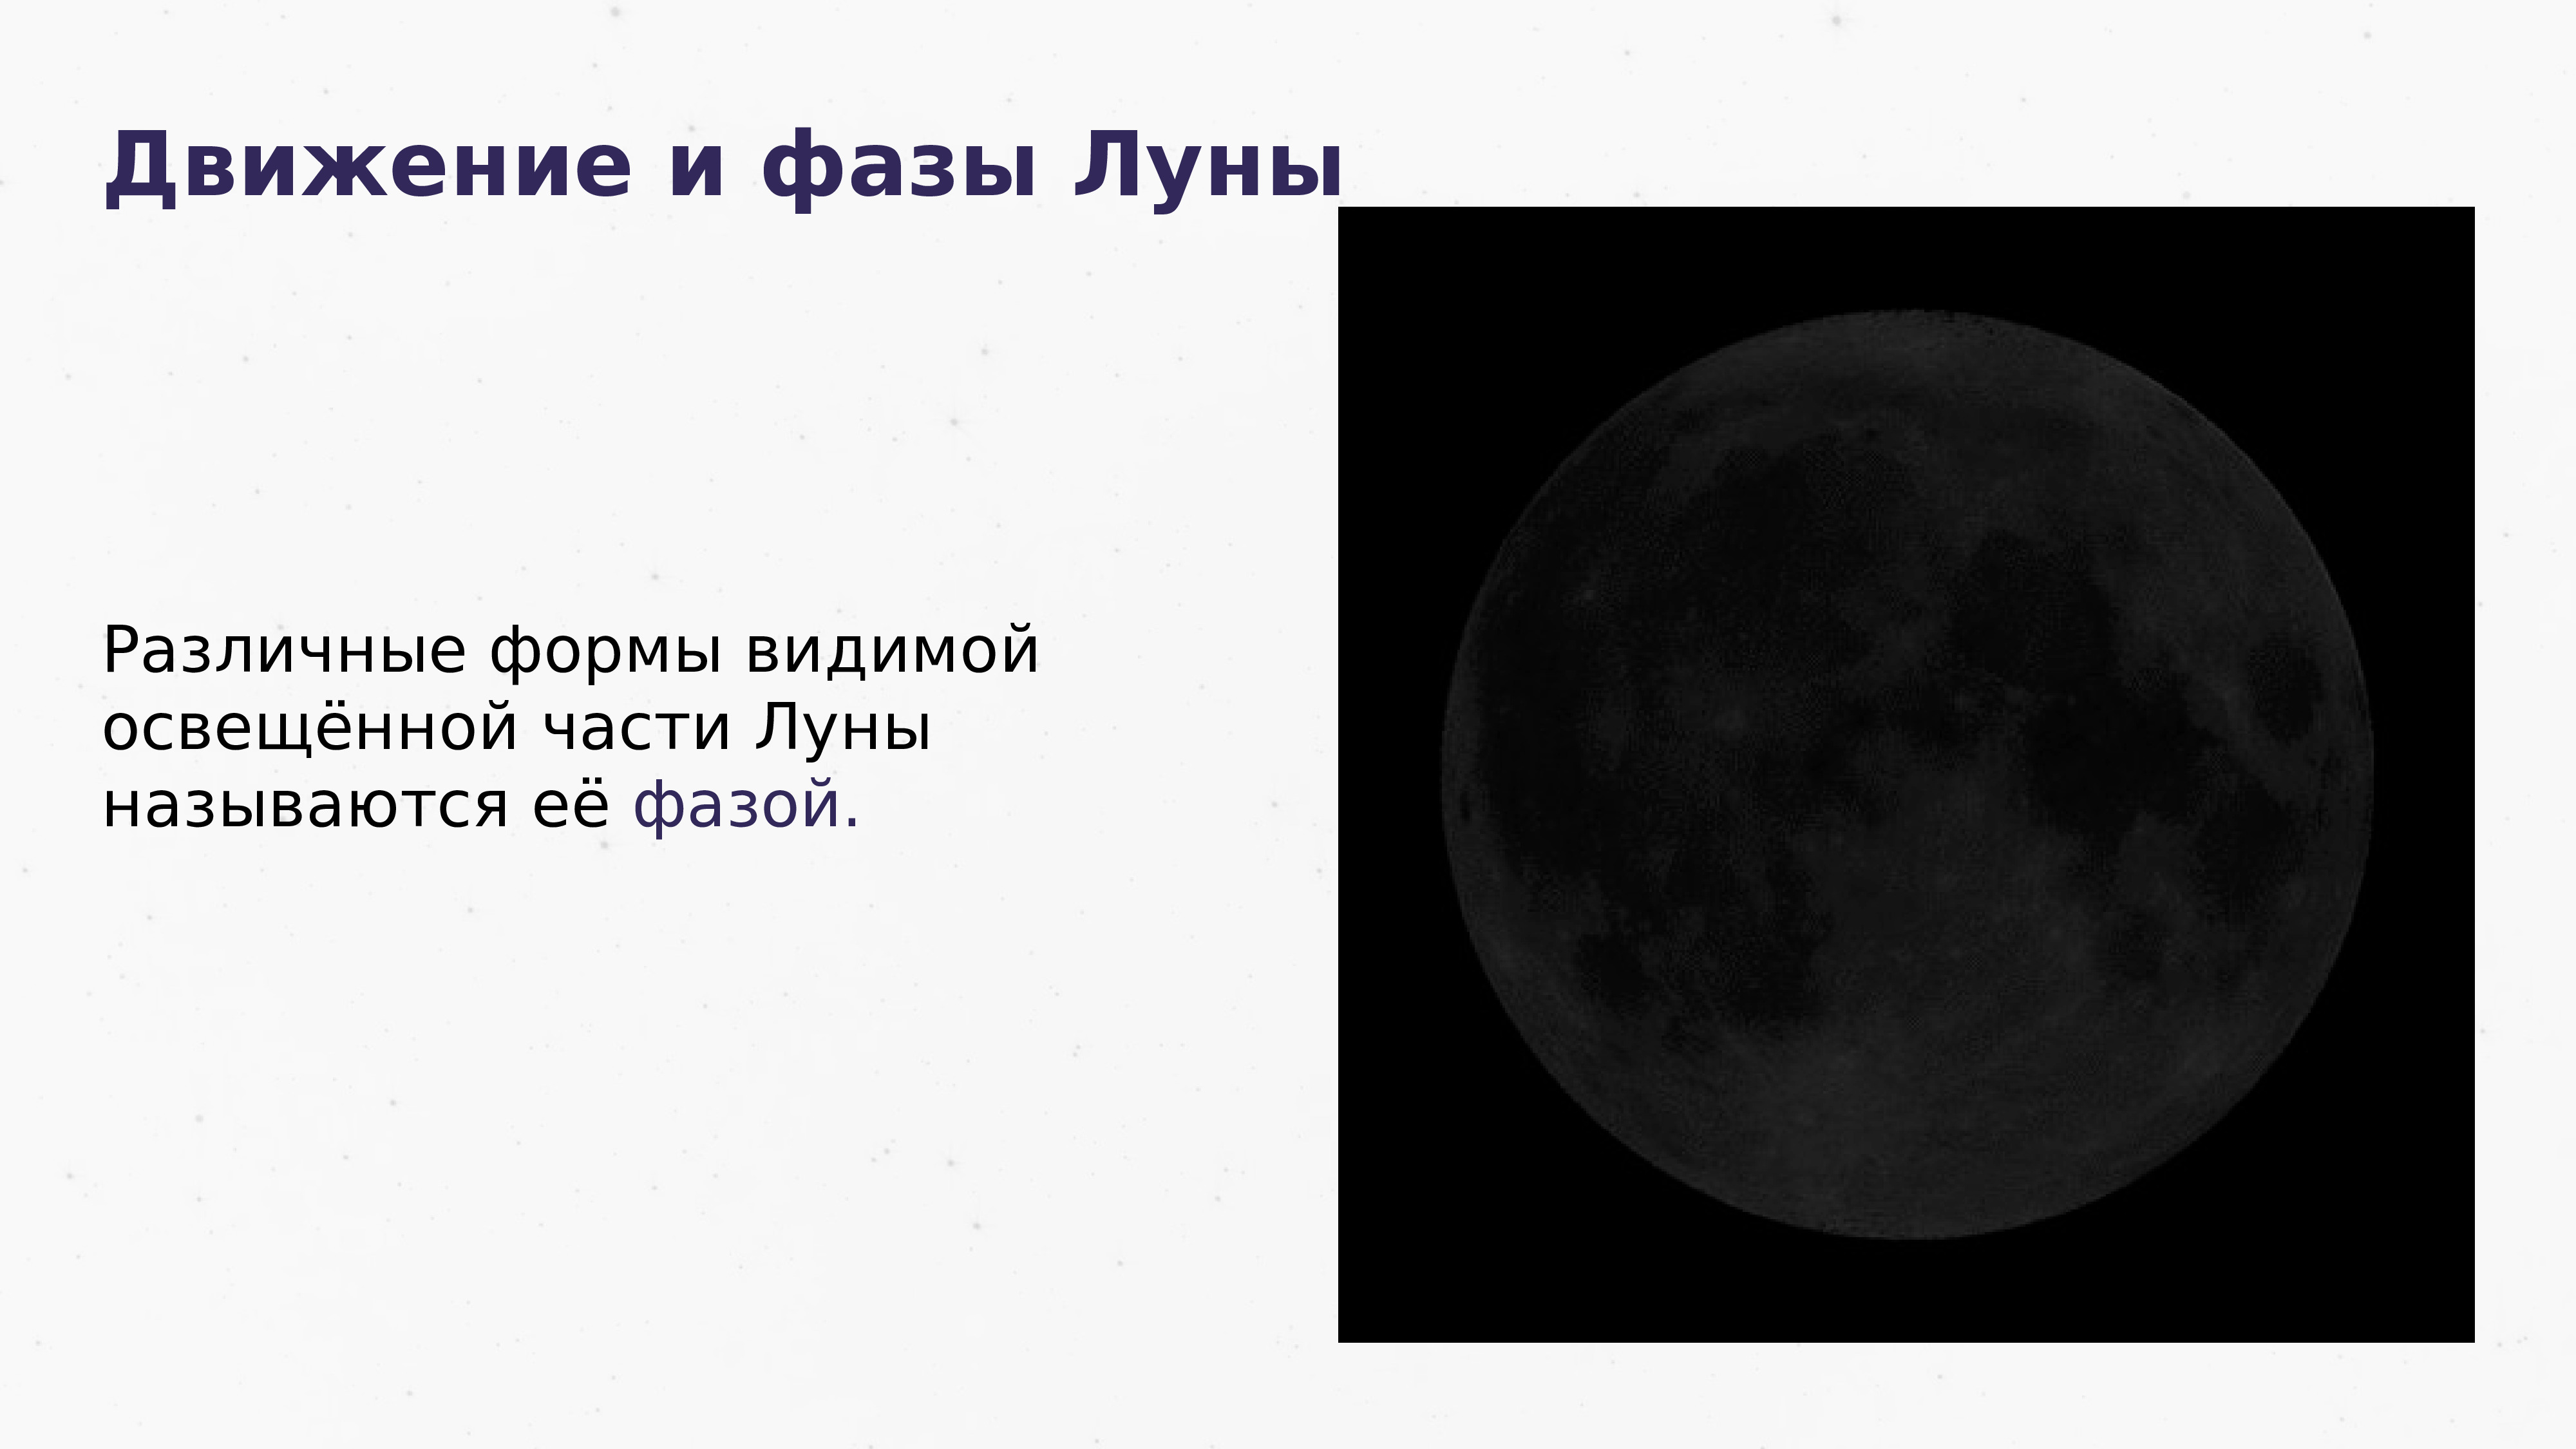 Видной части луны. Различные формы видимой освещённой части Луны называются. Движение и фазы Луны. Движение Луны астрономия. Движение и фазы Луны затмения солнца и Луны.